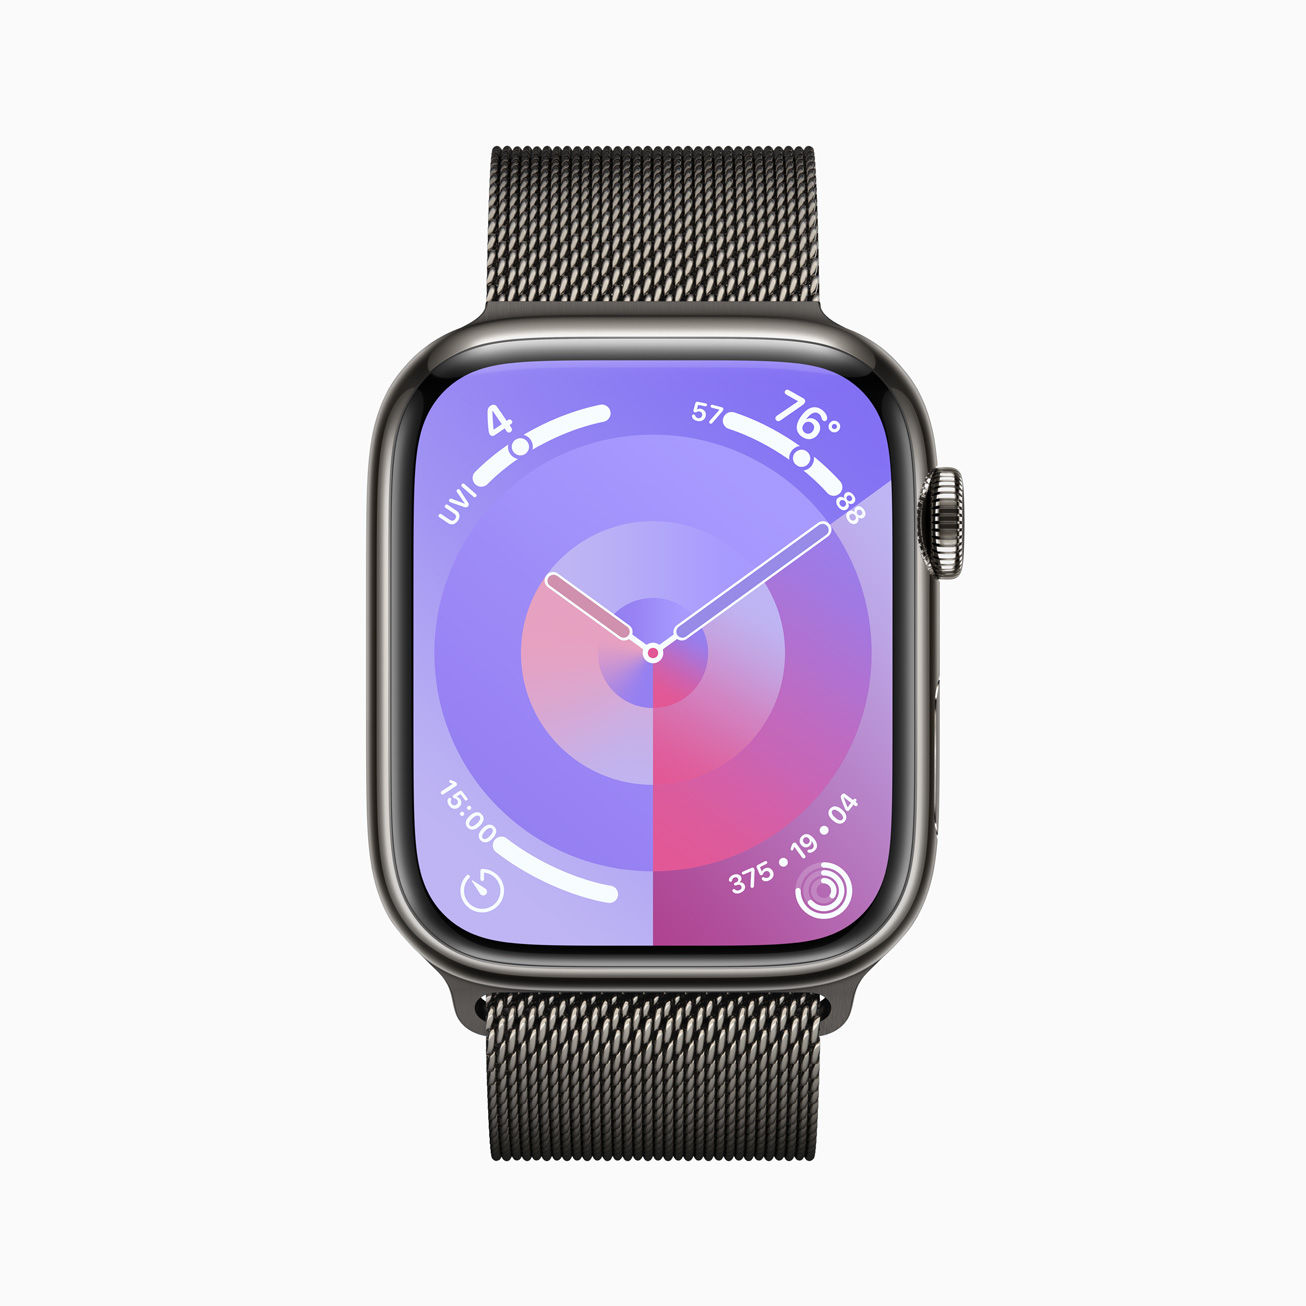 Apple Watch S9 Palette watch face